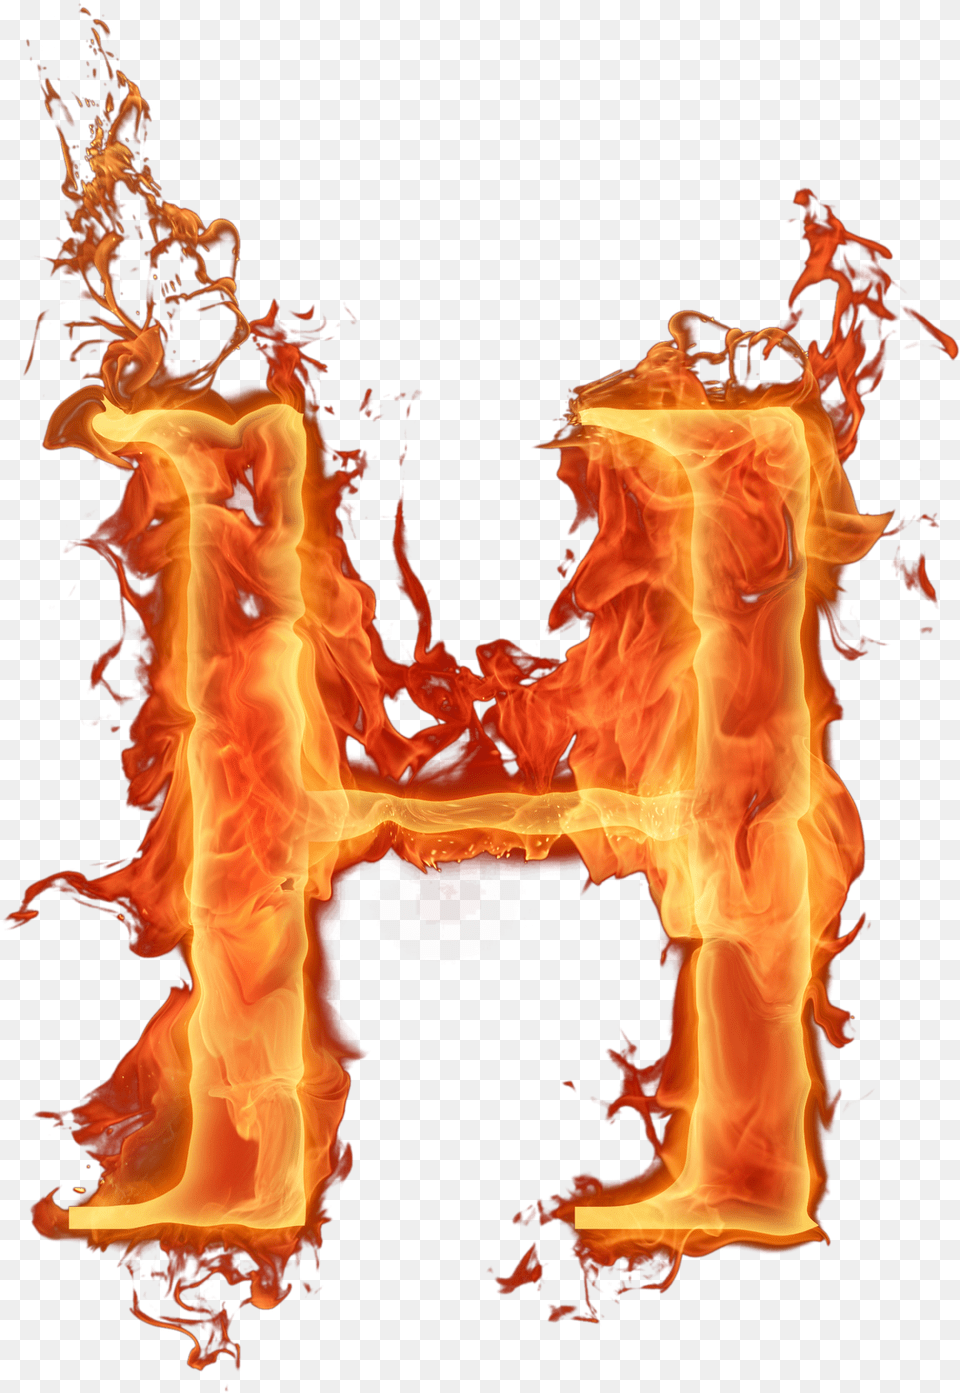 Alfabeto Fogo Fire Alphabet, Flame, Bonfire Png